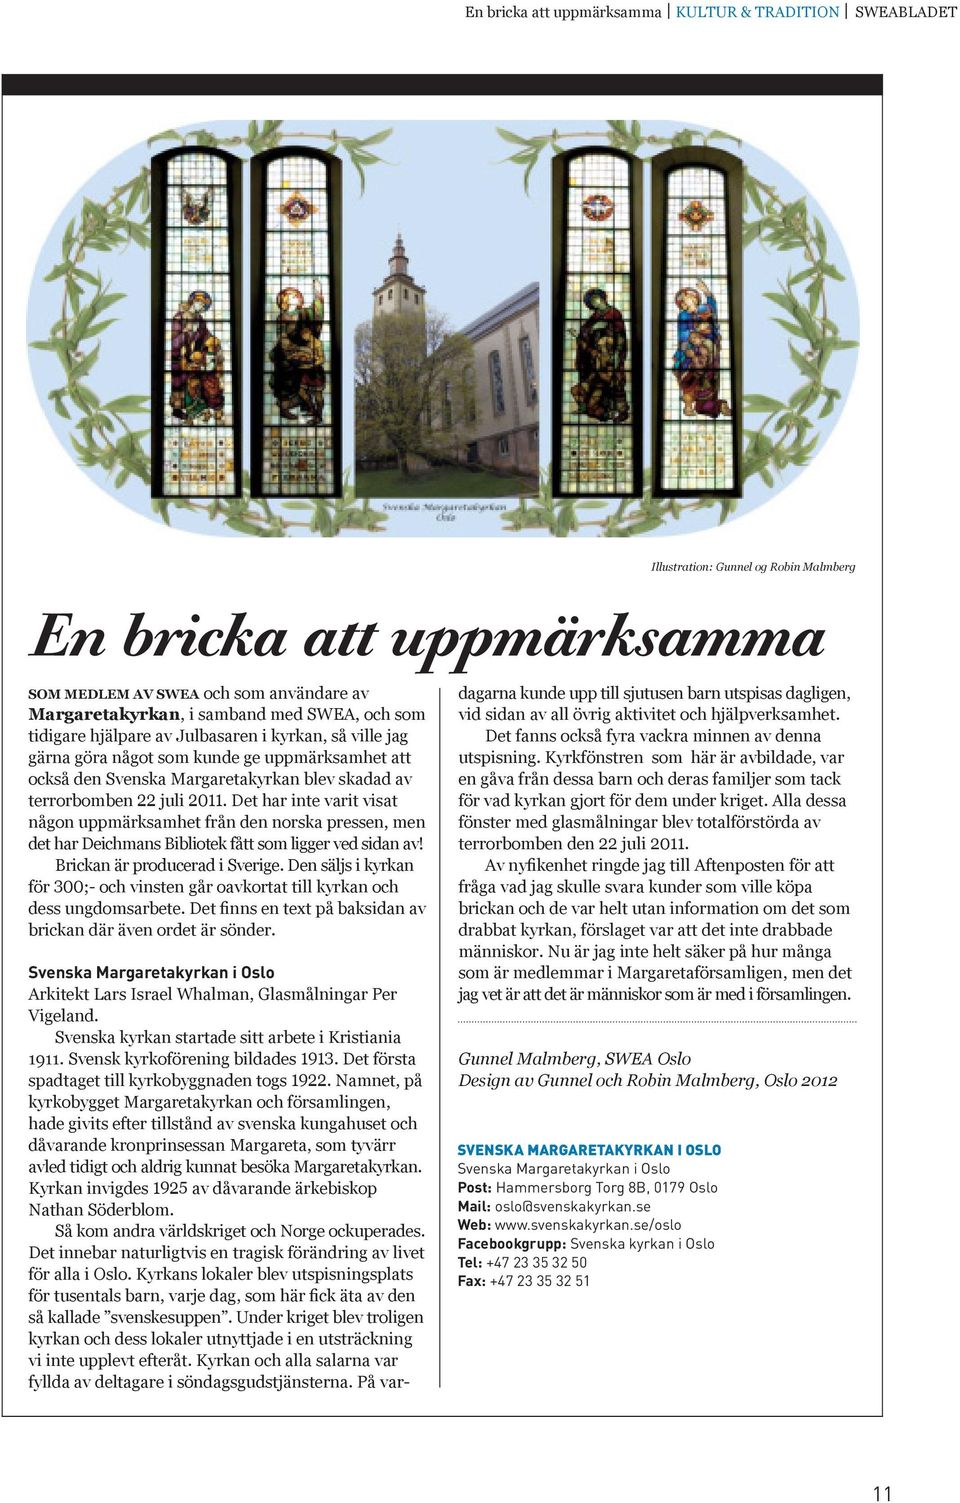 Det har inte varit visat någon uppmärksamhet från den norska pressen, men det har Deichmans Bibliotek fått som ligger ved sidan av! Brickan är producerad i Sverige.